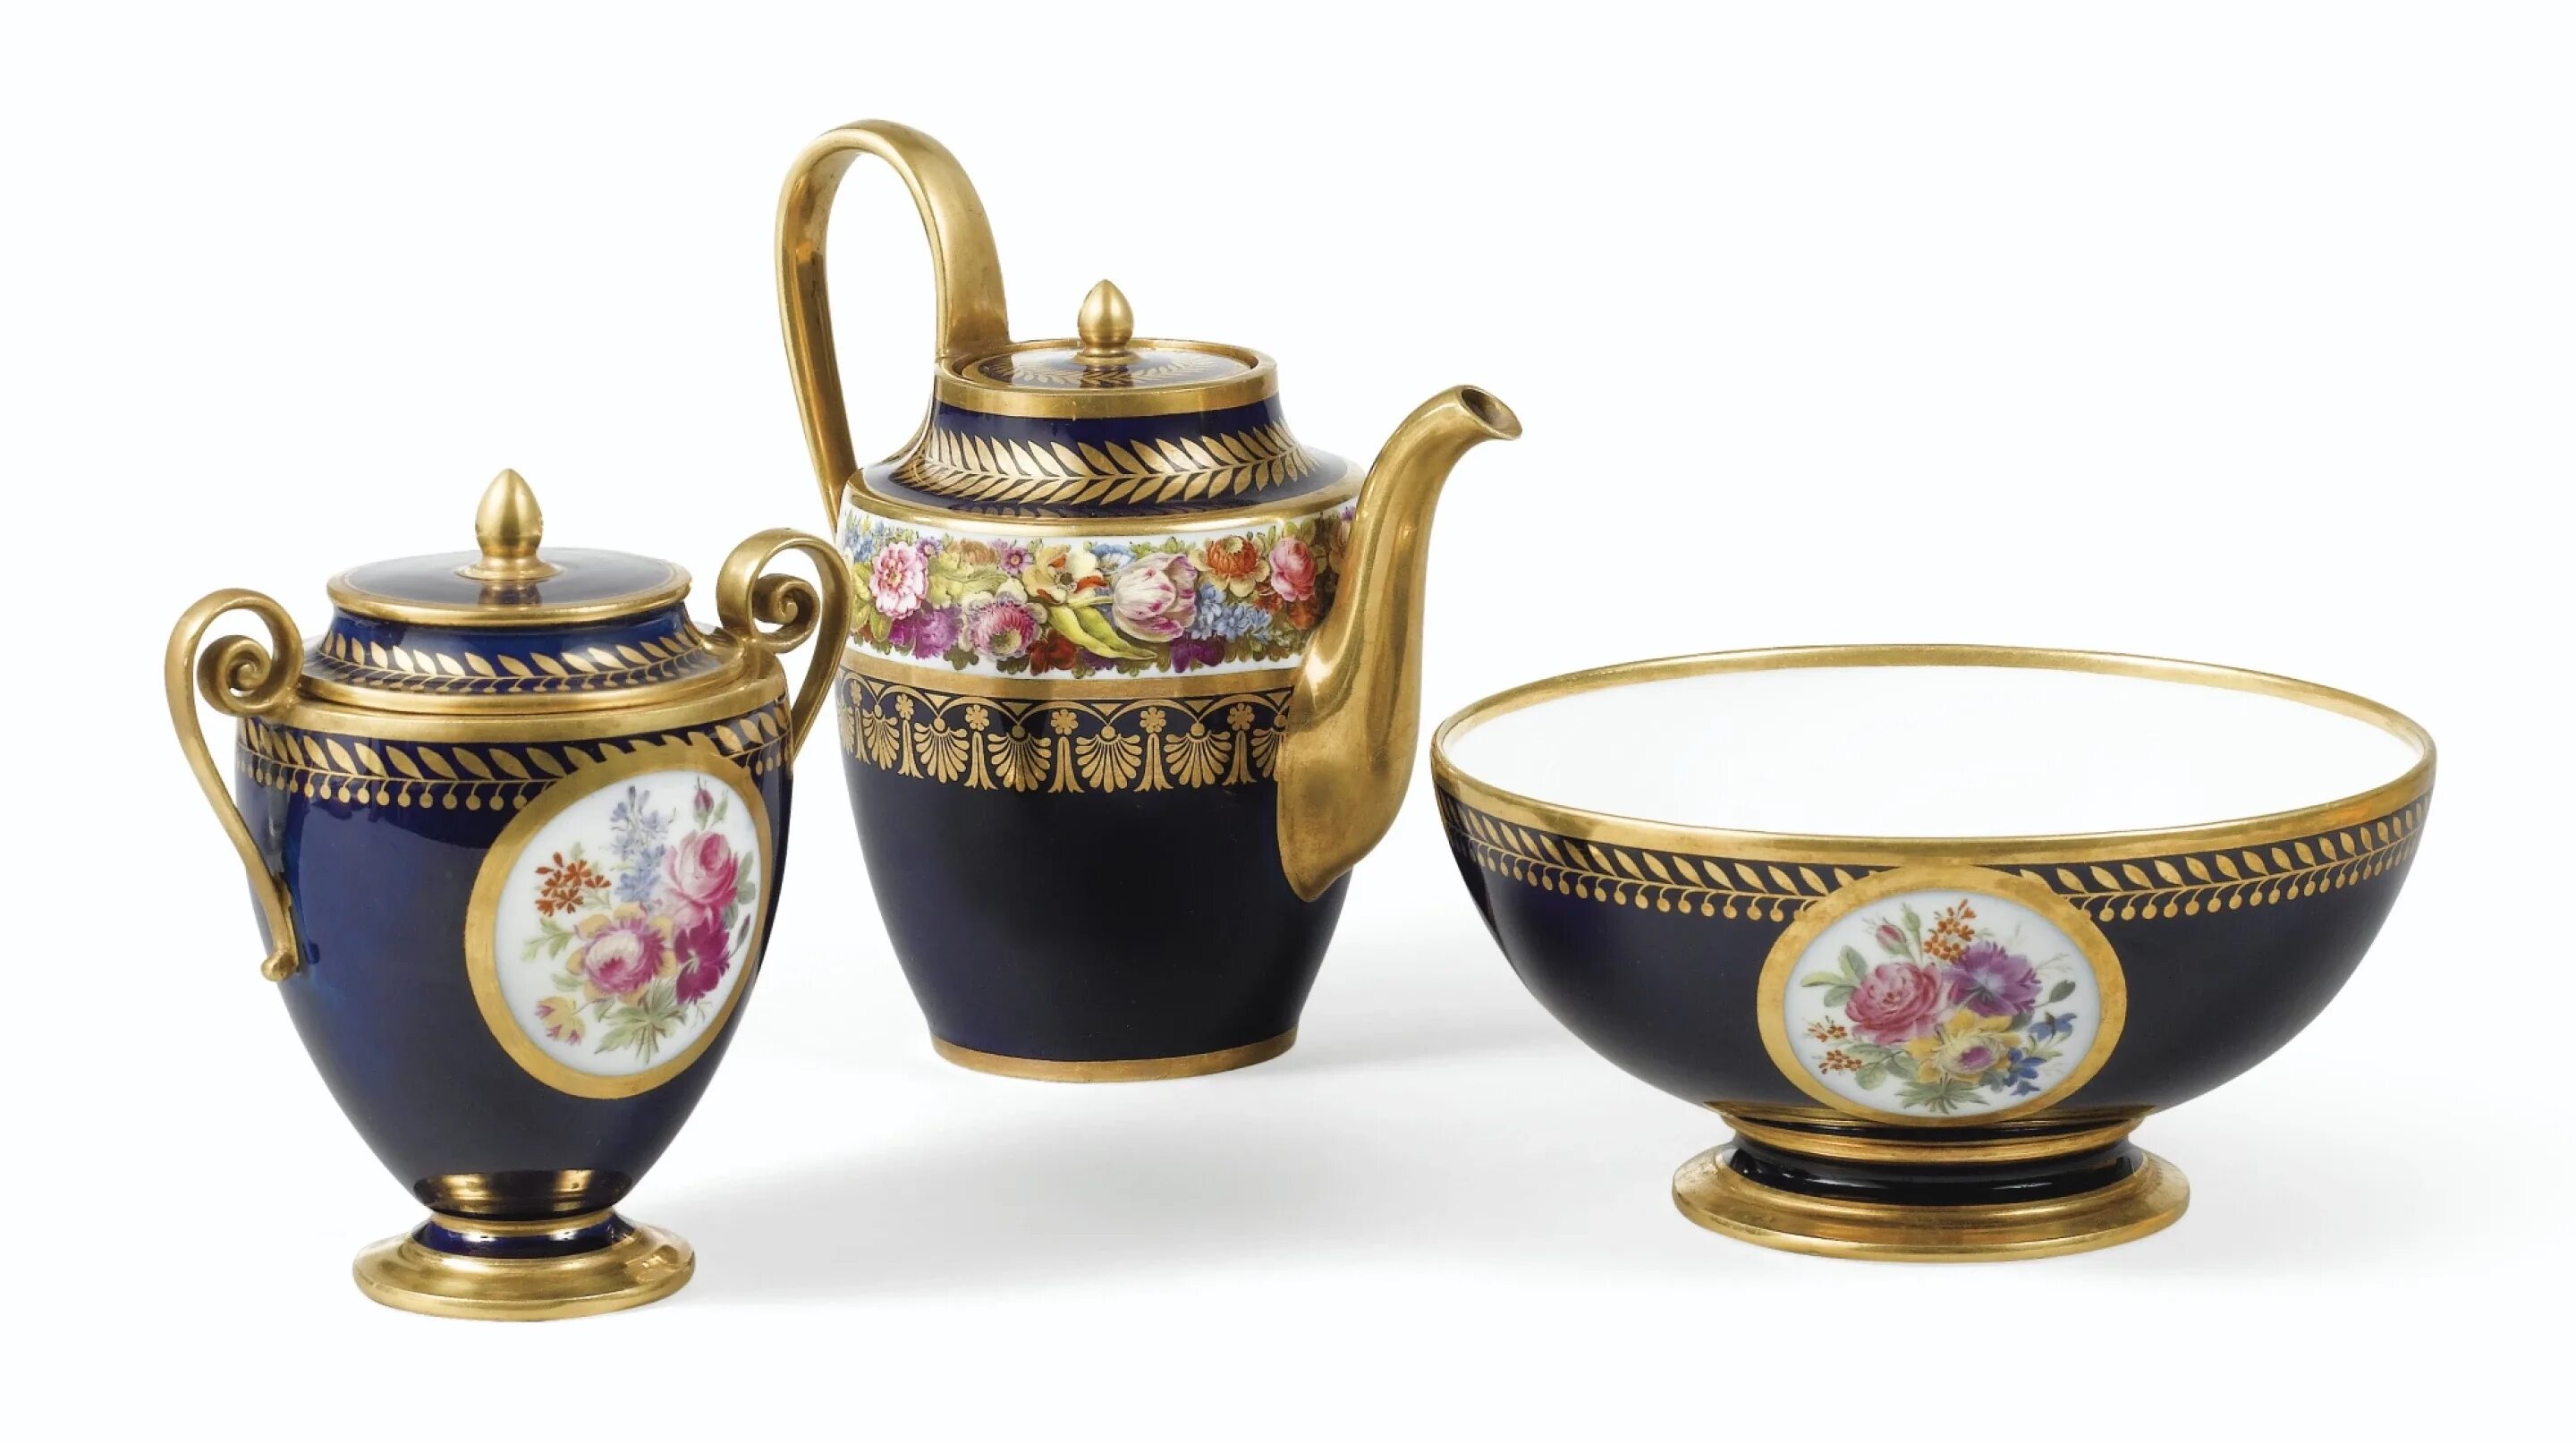 Севрский сервиз. Севрская фарфоровая мануфактура, Франция (Sevres Porcelain) (Christie's Auction). Чайный сервиз Севрский фарфор. Севрская фарфоровая мануфактура Франция 18 век.